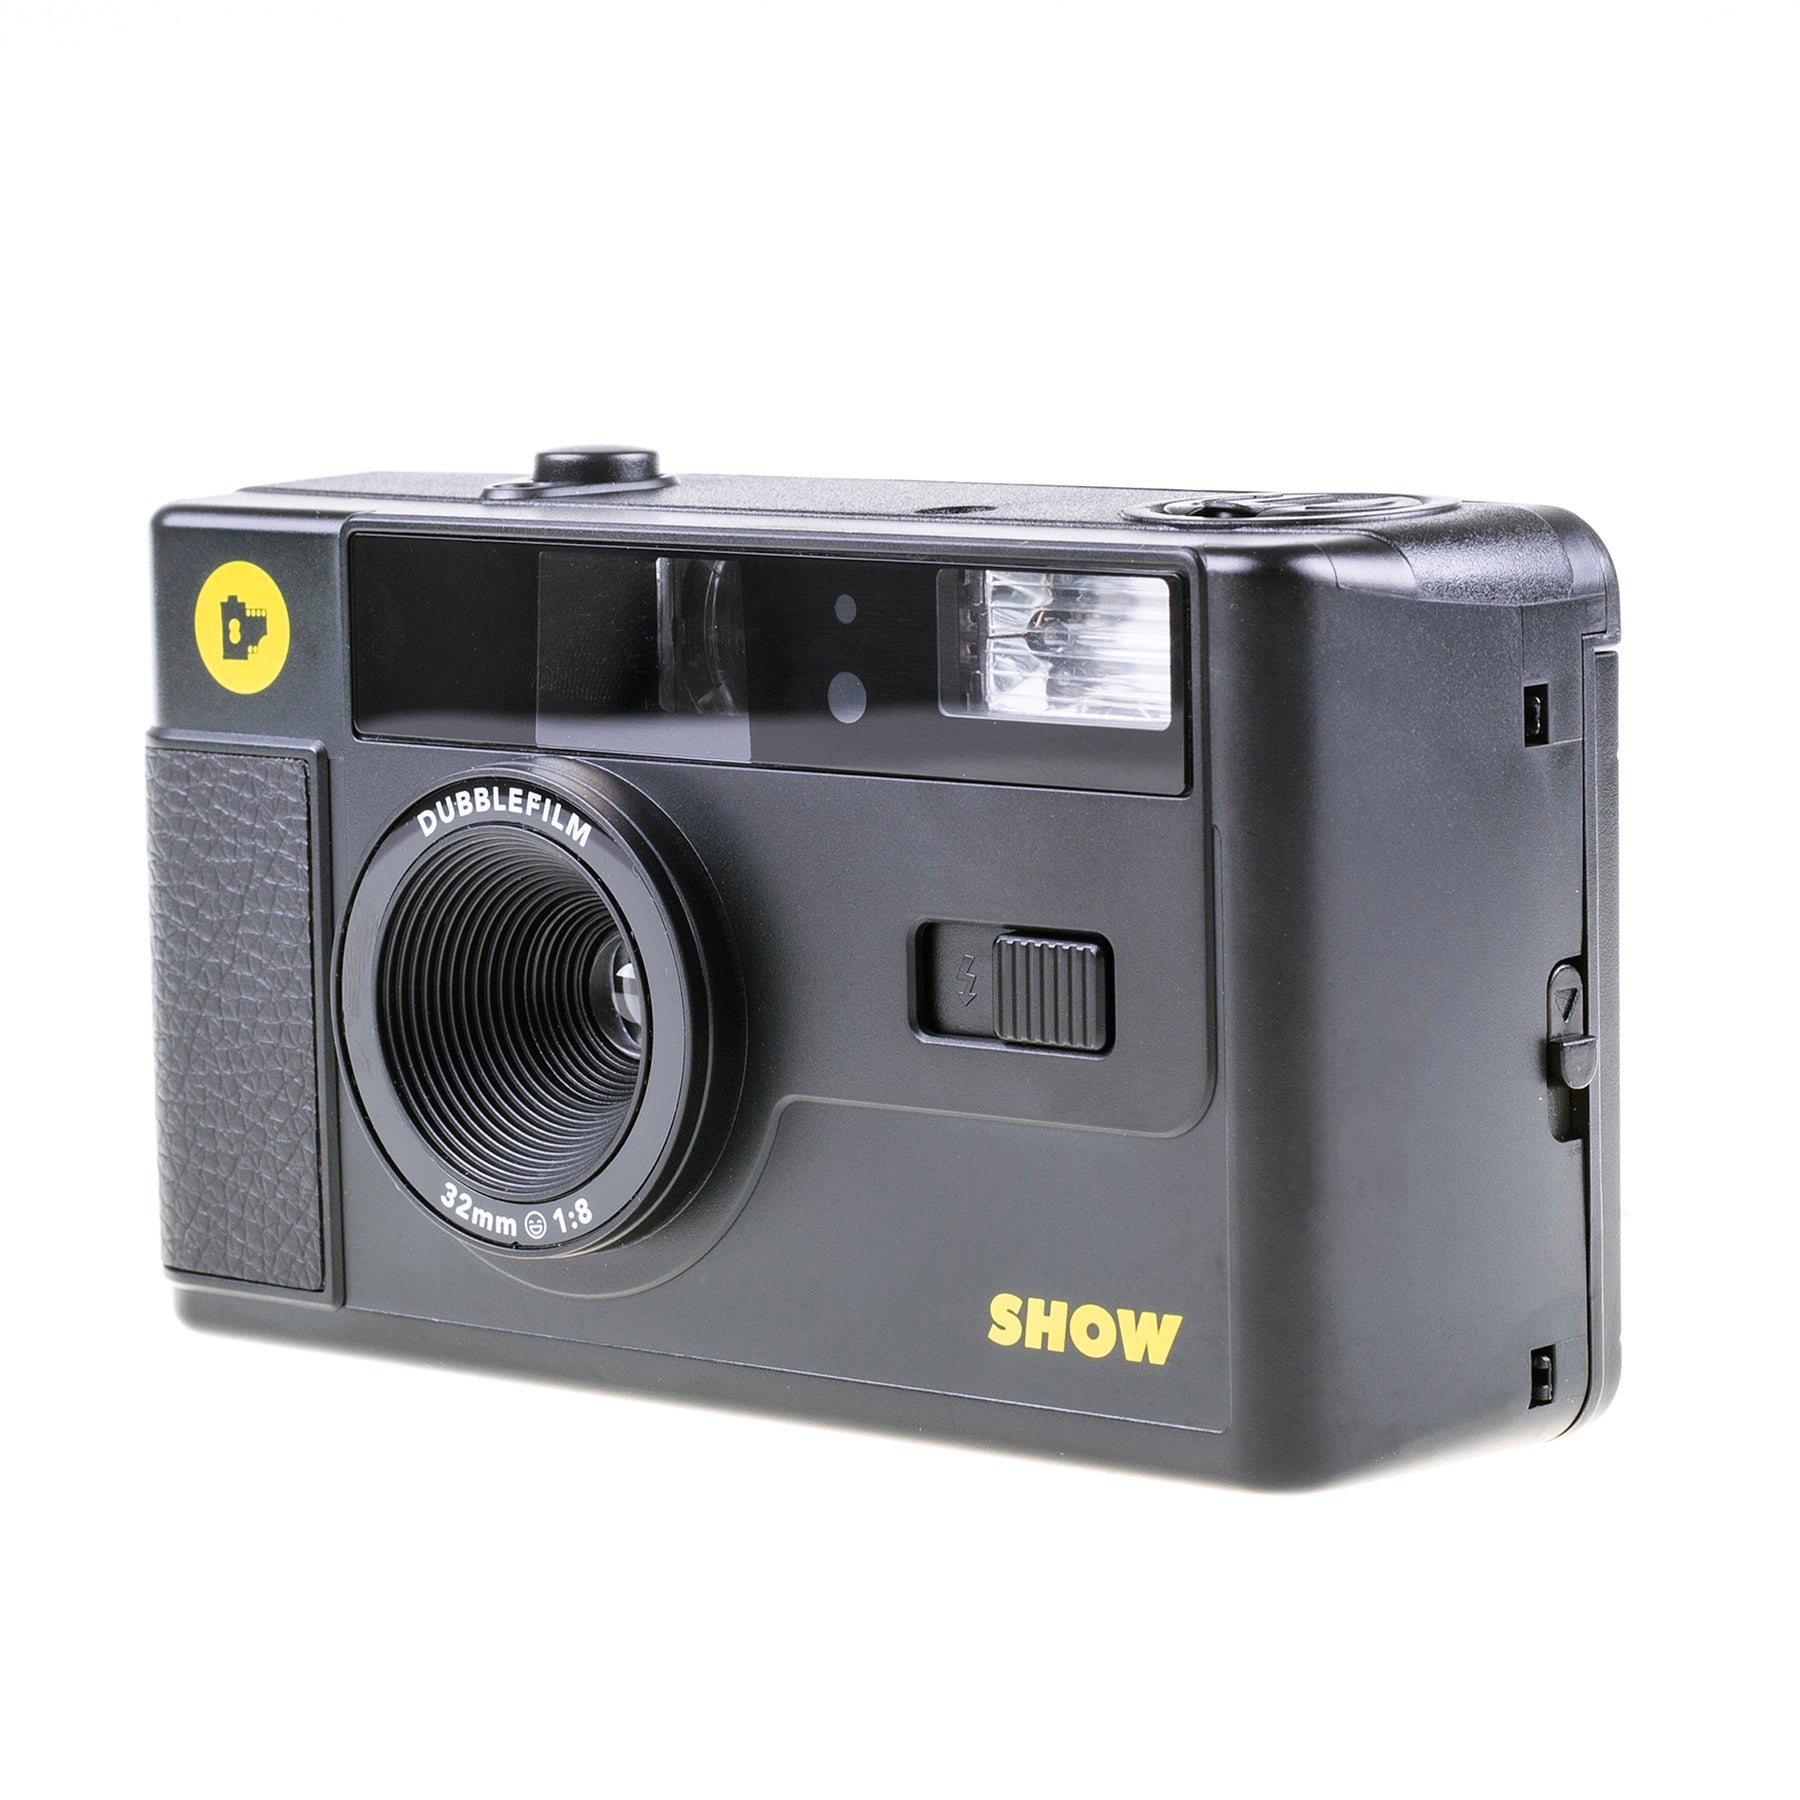 Dubblefilm Show, una nueva cámara compacta de 35 mm para los amantes de la  fotografía analógica